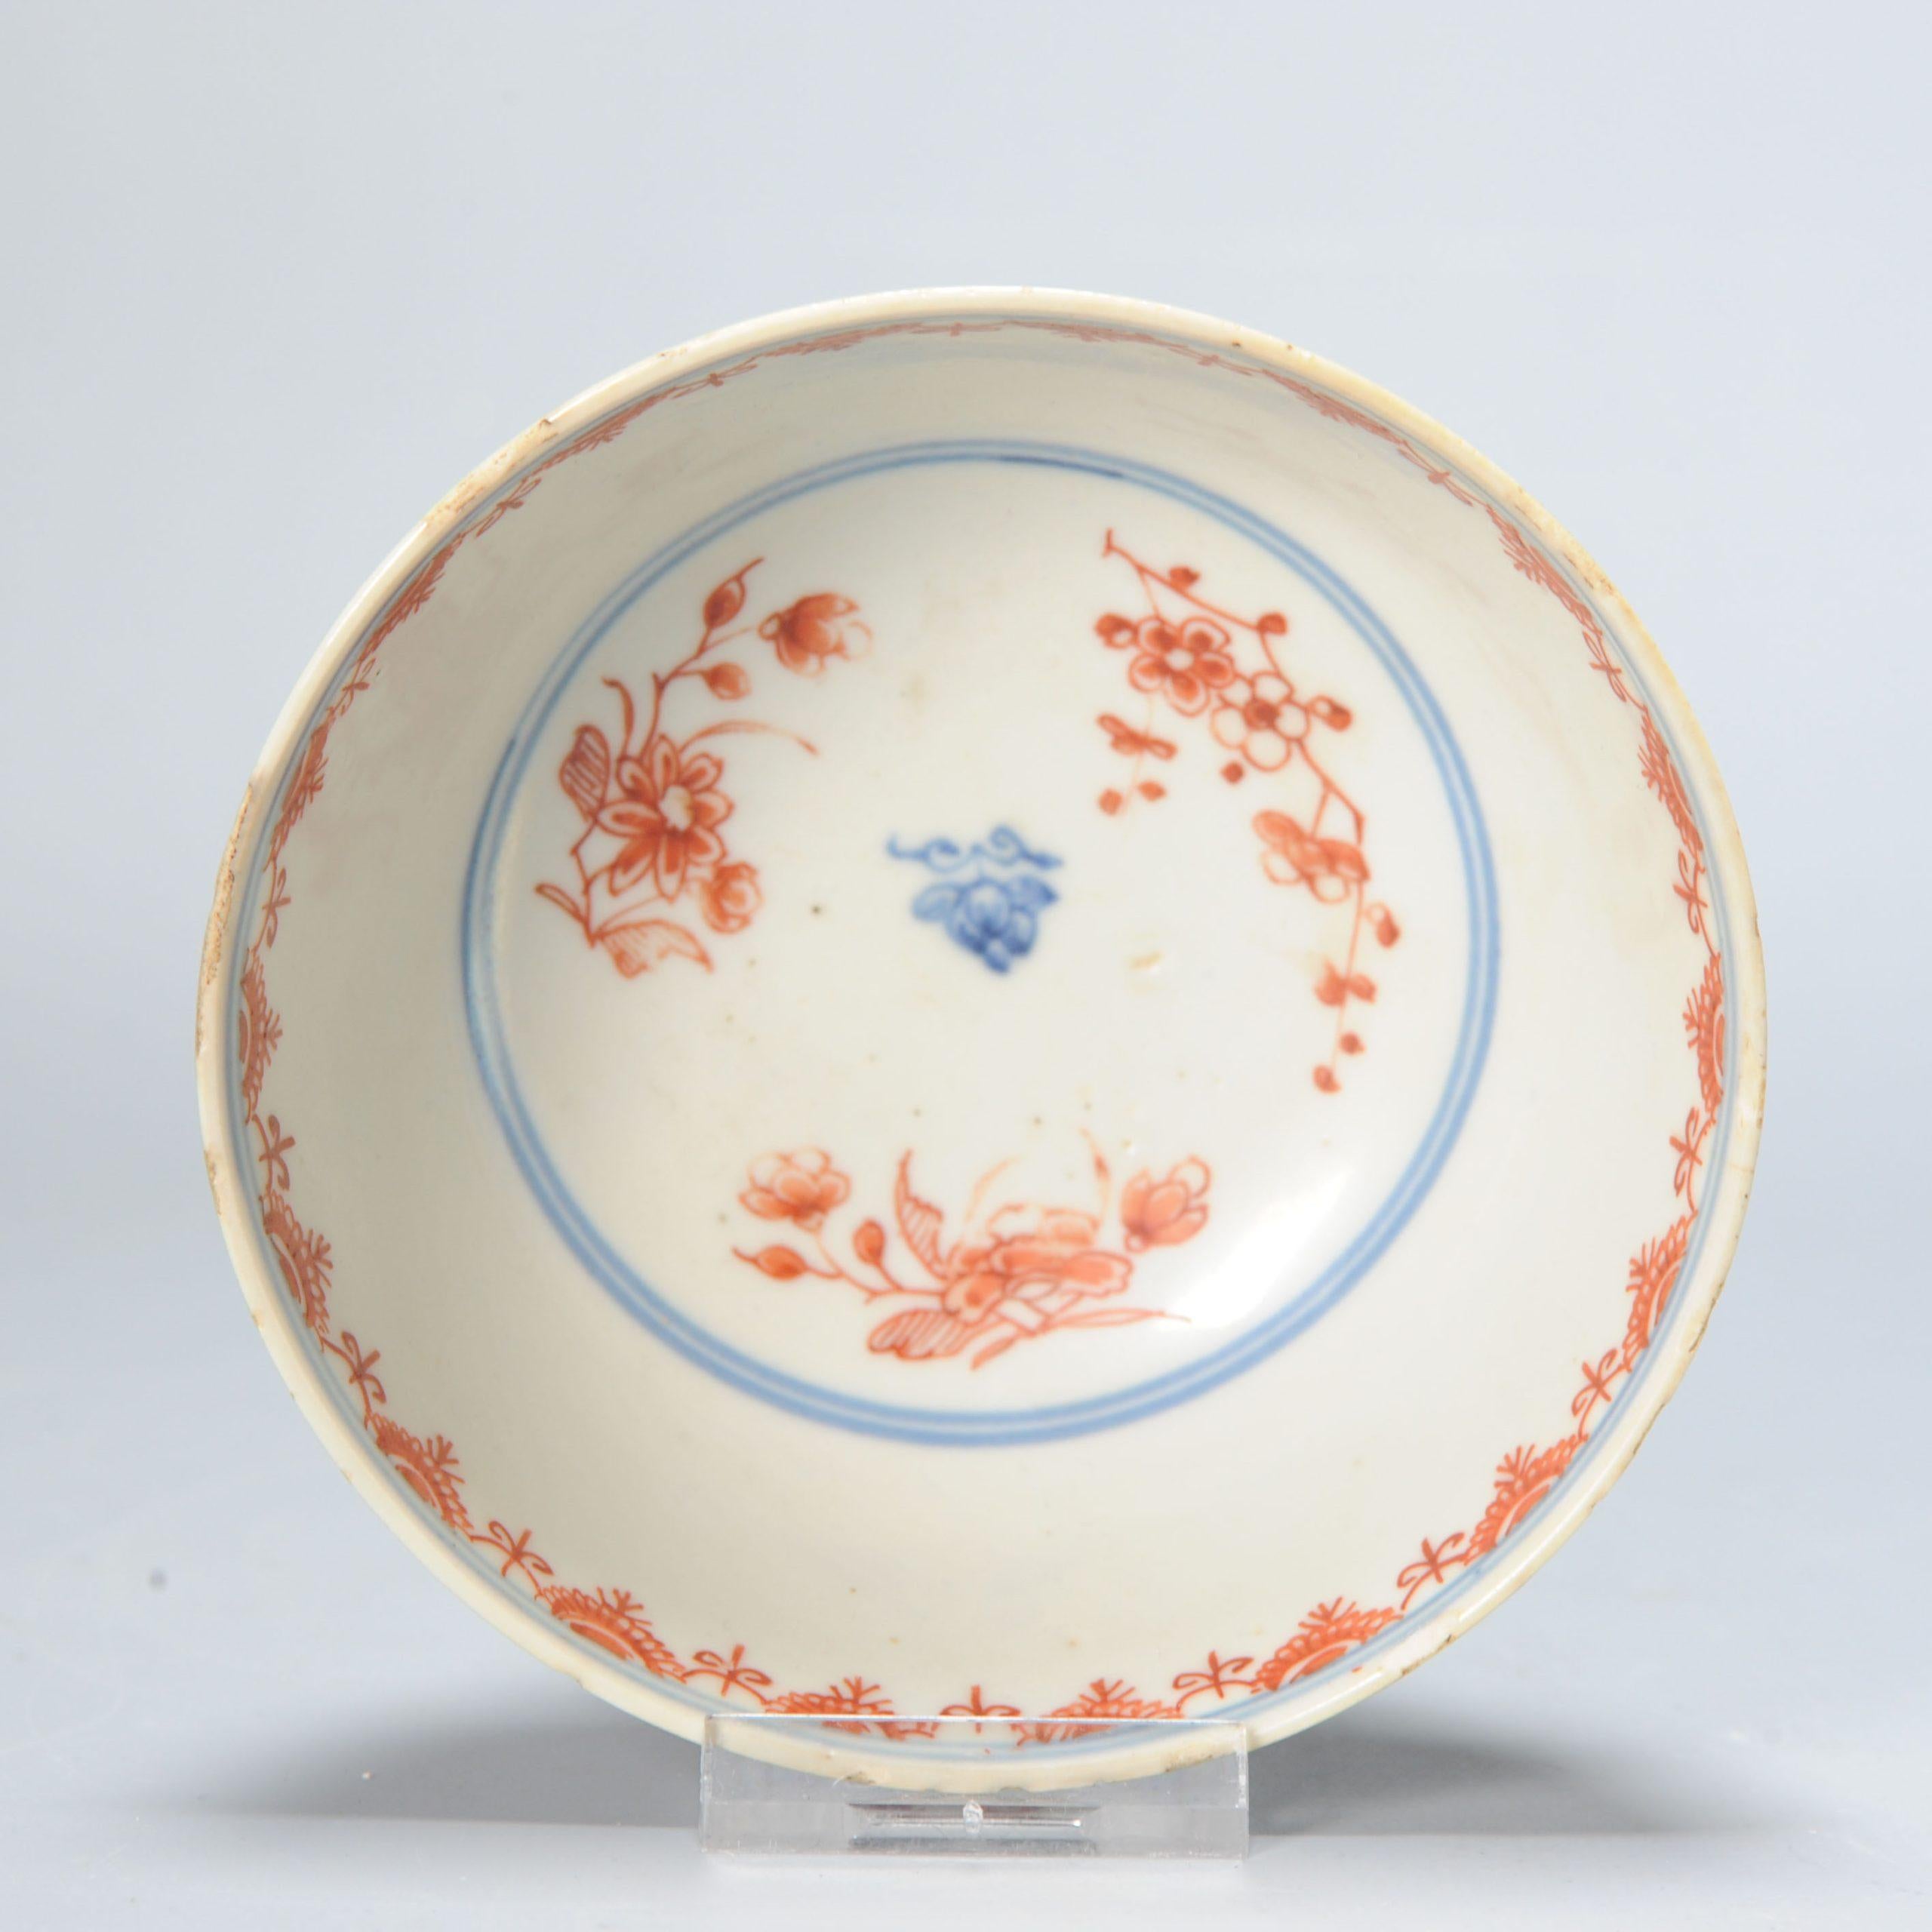 Très belle coupe en porcelaine Kangxi Amsterdam Bont du XVIIIe siècle. Marqué à la base.

Nous jetons un coup d'œil sur la porcelaine d'Amsterdams Bont en provenance de Chine. Une niche relativement peu connue de porcelaine chinoise datant d'environ